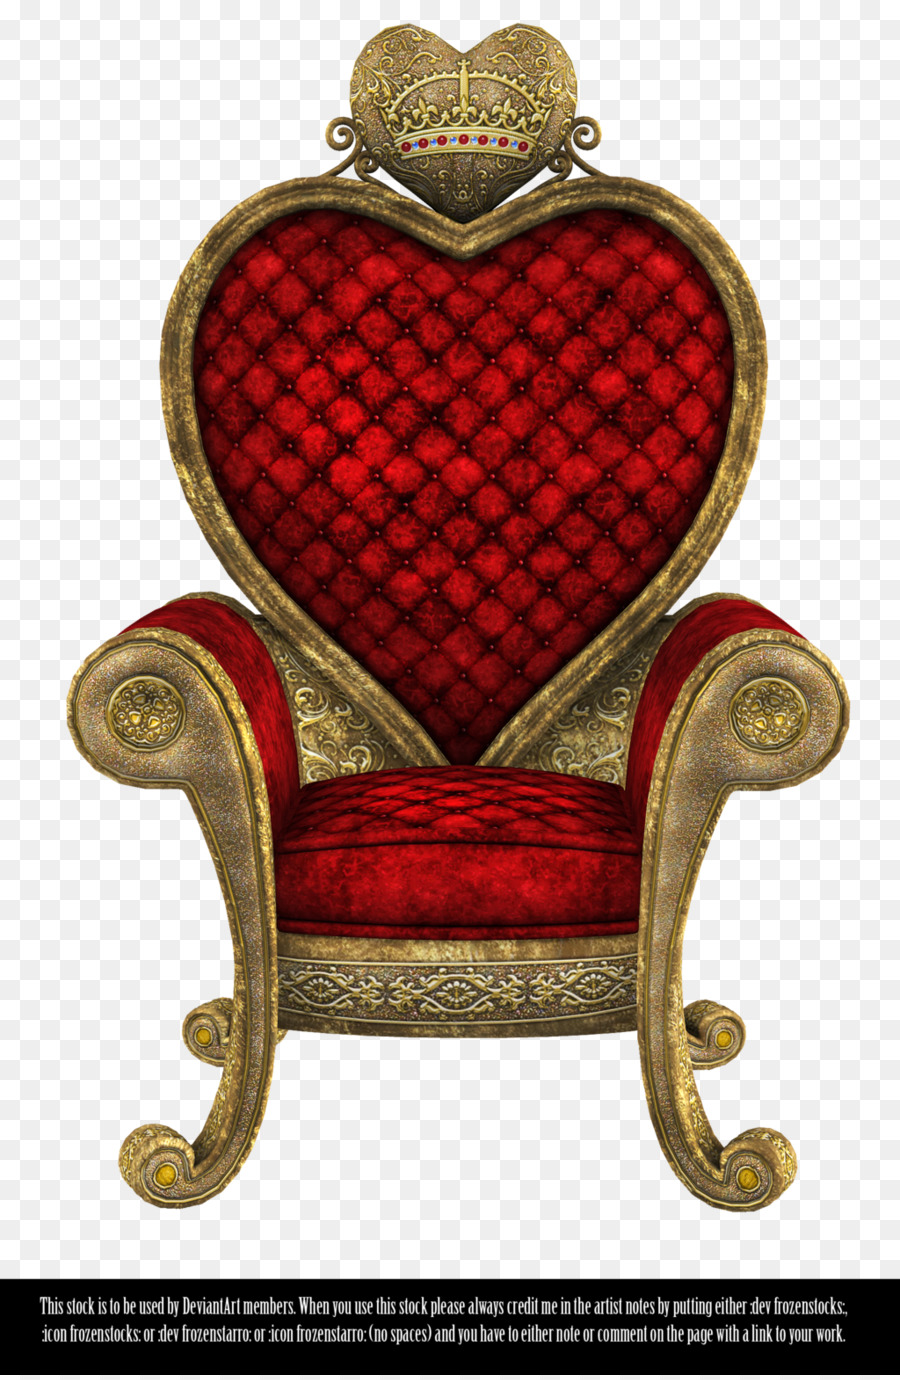 Queen Of Hearts clipart